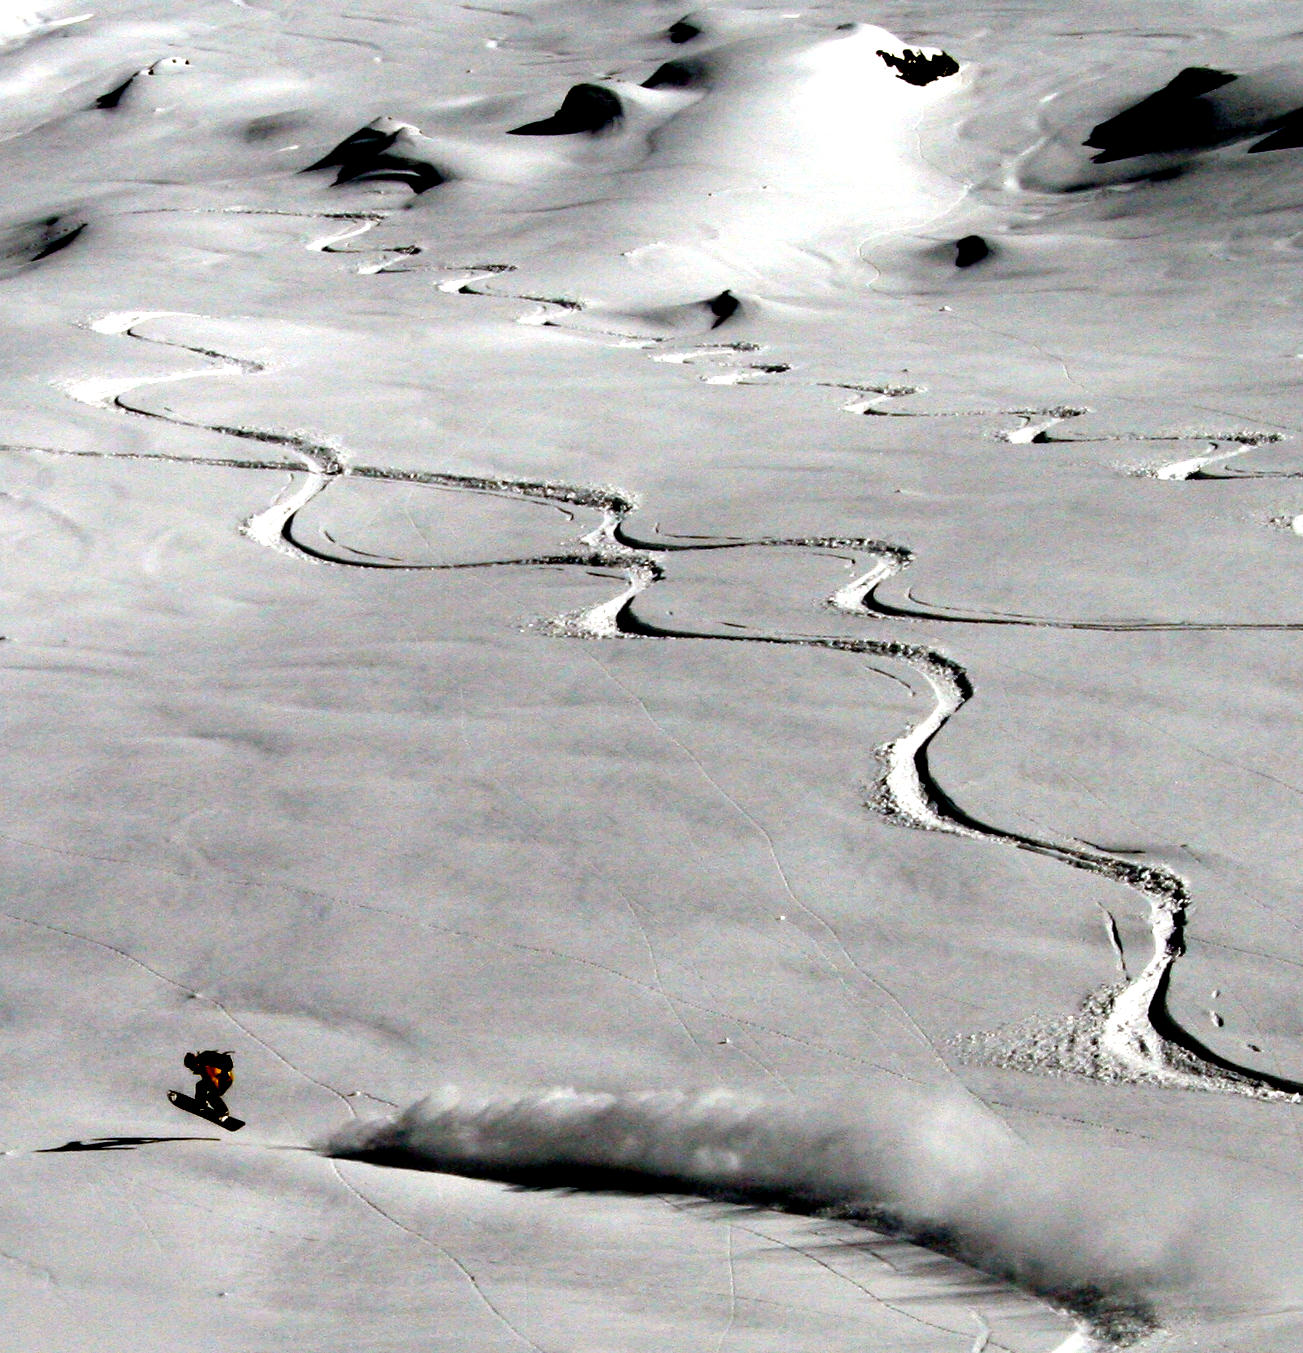 traces_snowboard